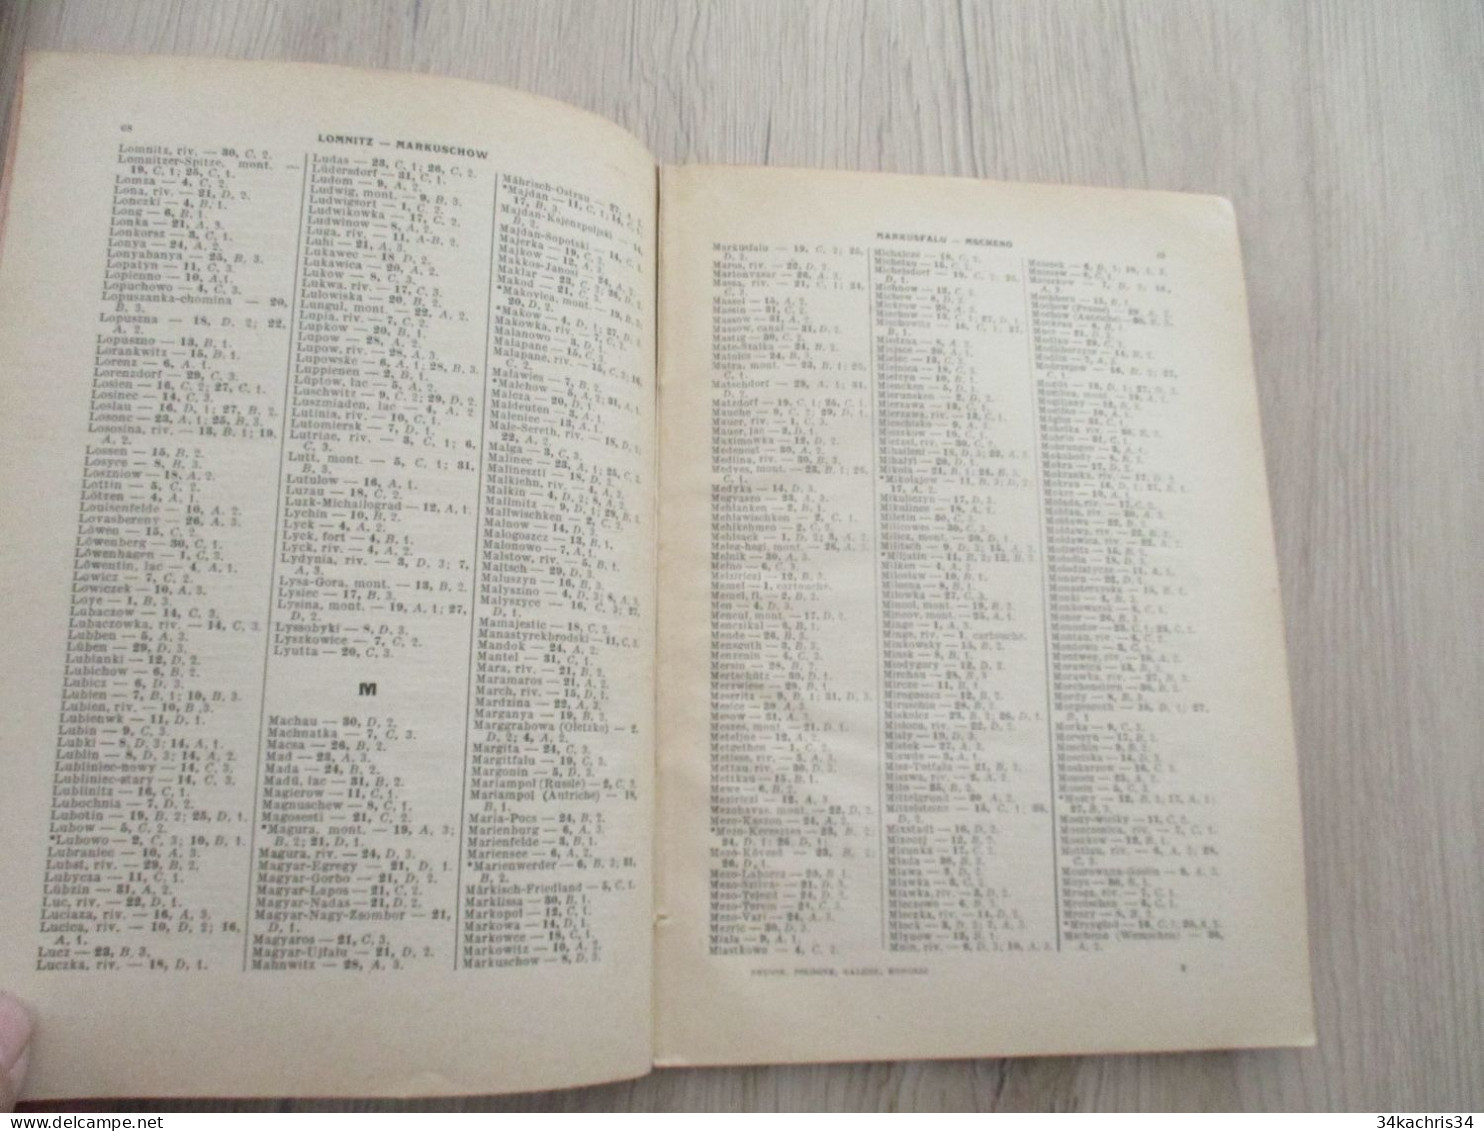 Atlas Index avec cartes théâtres de la guerre Partie 2 Prusse Pologne Galicie Hongrie Berger Levrault 1914/1915 en l'éta